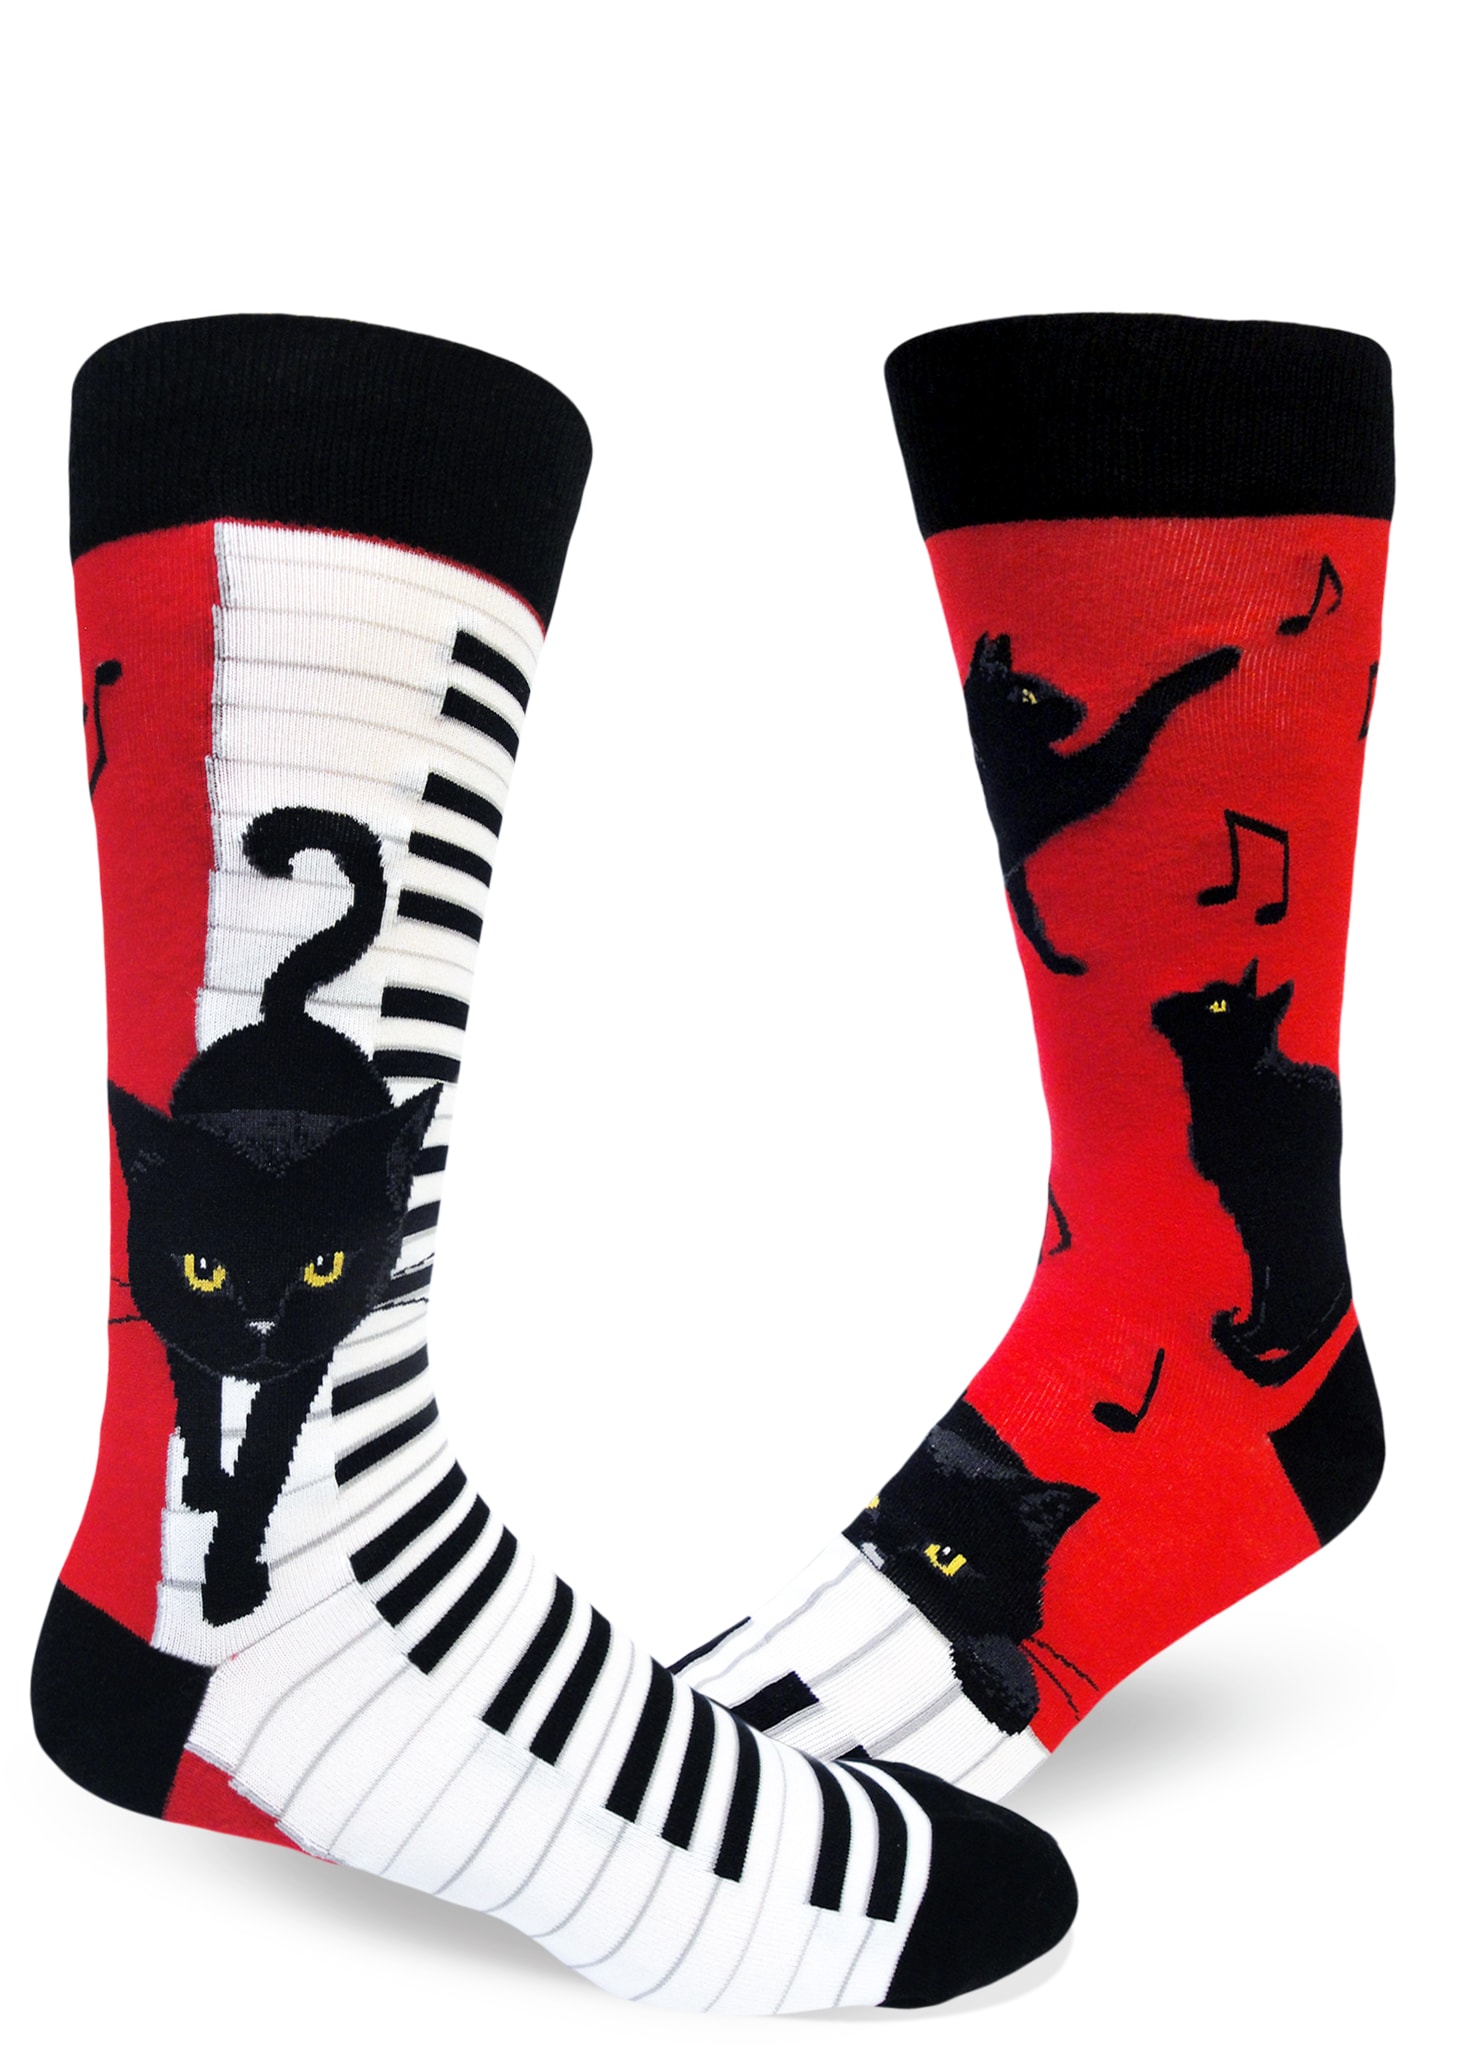 catsocksmenscrewanimalsockmodsocksred ModSocks Novelty Socks